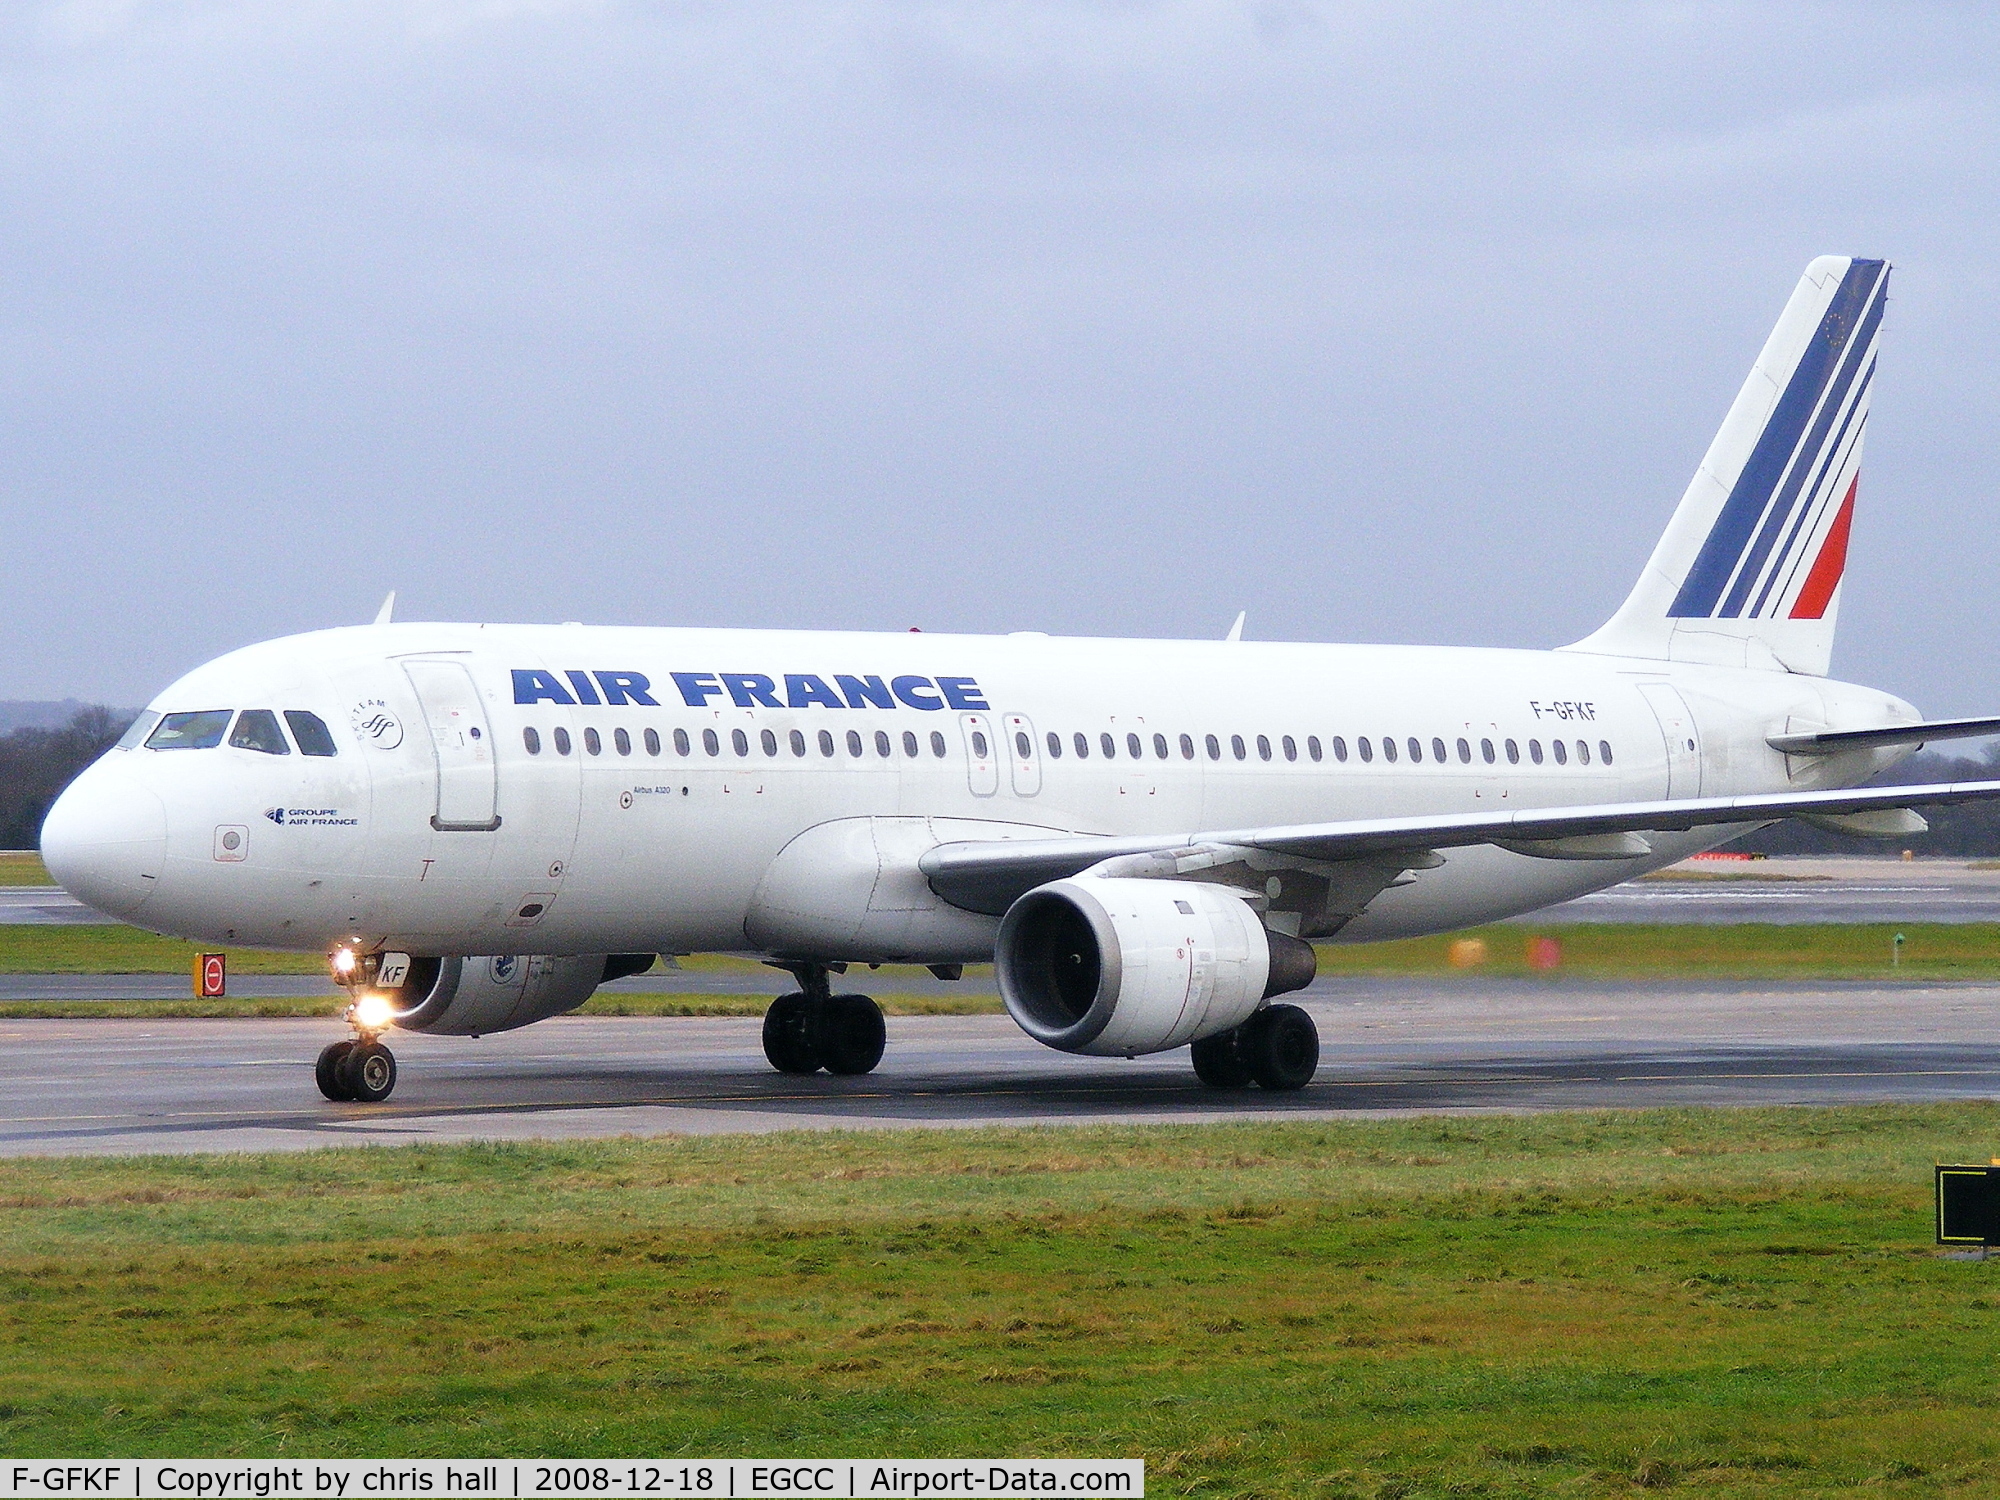 F-GFKF, 1988 Airbus A320-111 C/N 0020, Air France